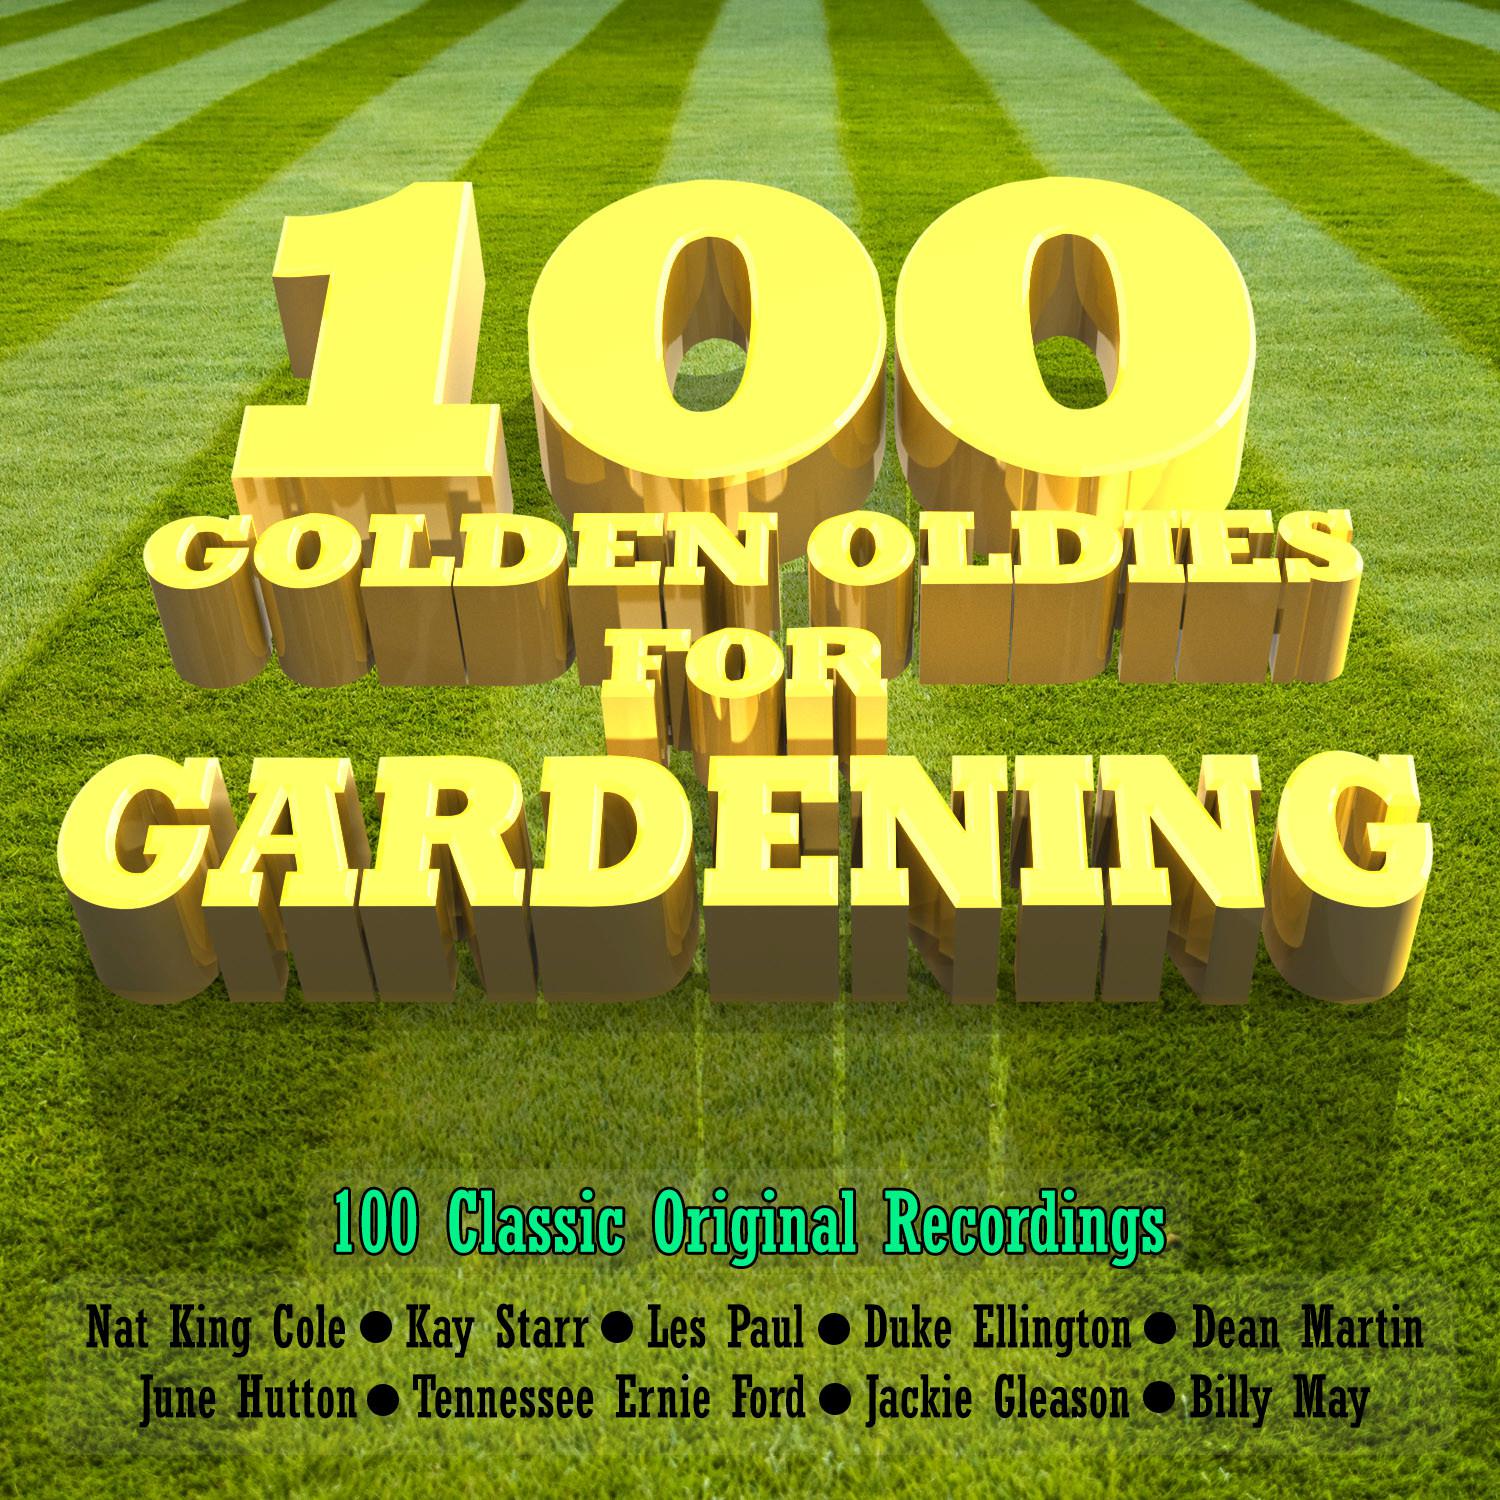 100 Golden Oldies for Gardening